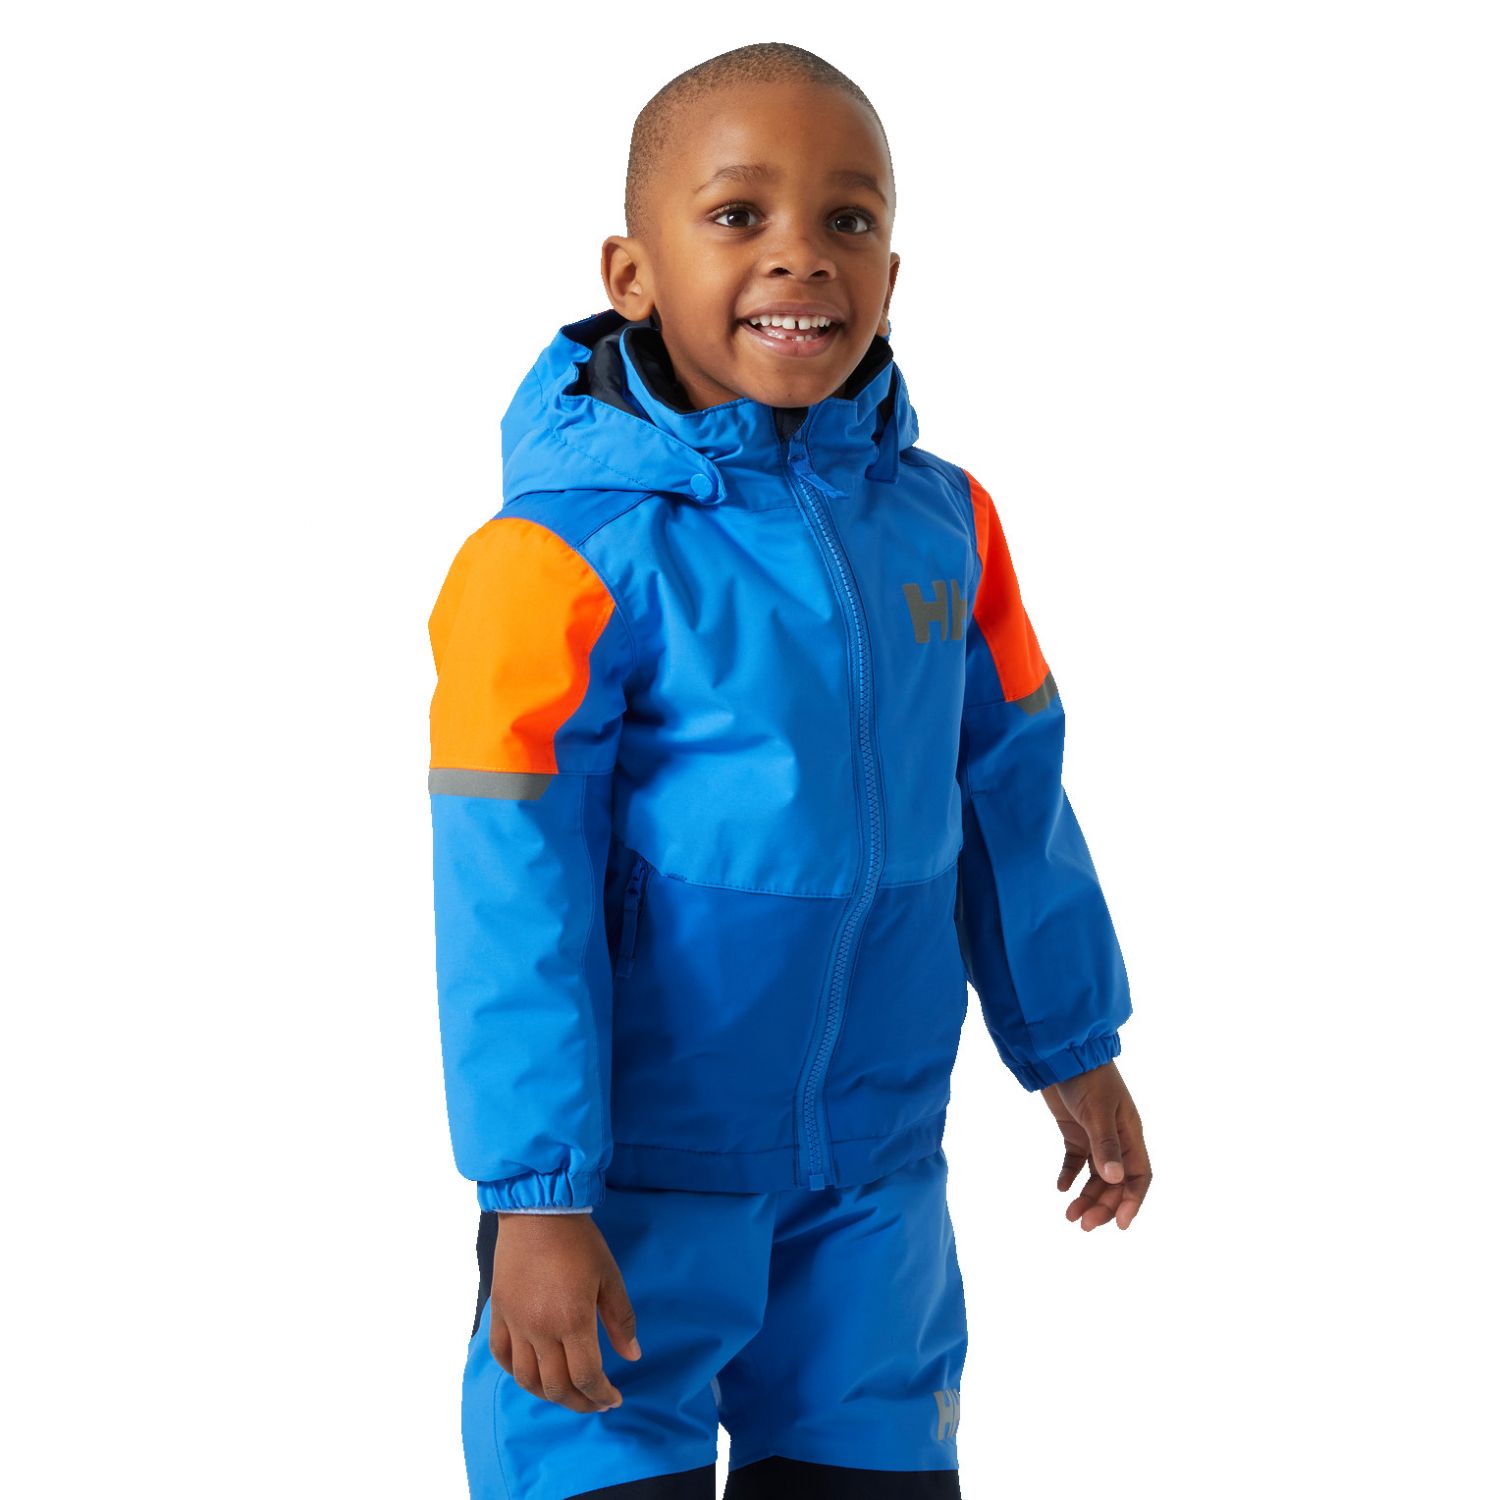 Helly Hansen K Rider 2.0 Ins, ski jacket, kids, cobalt 2.0